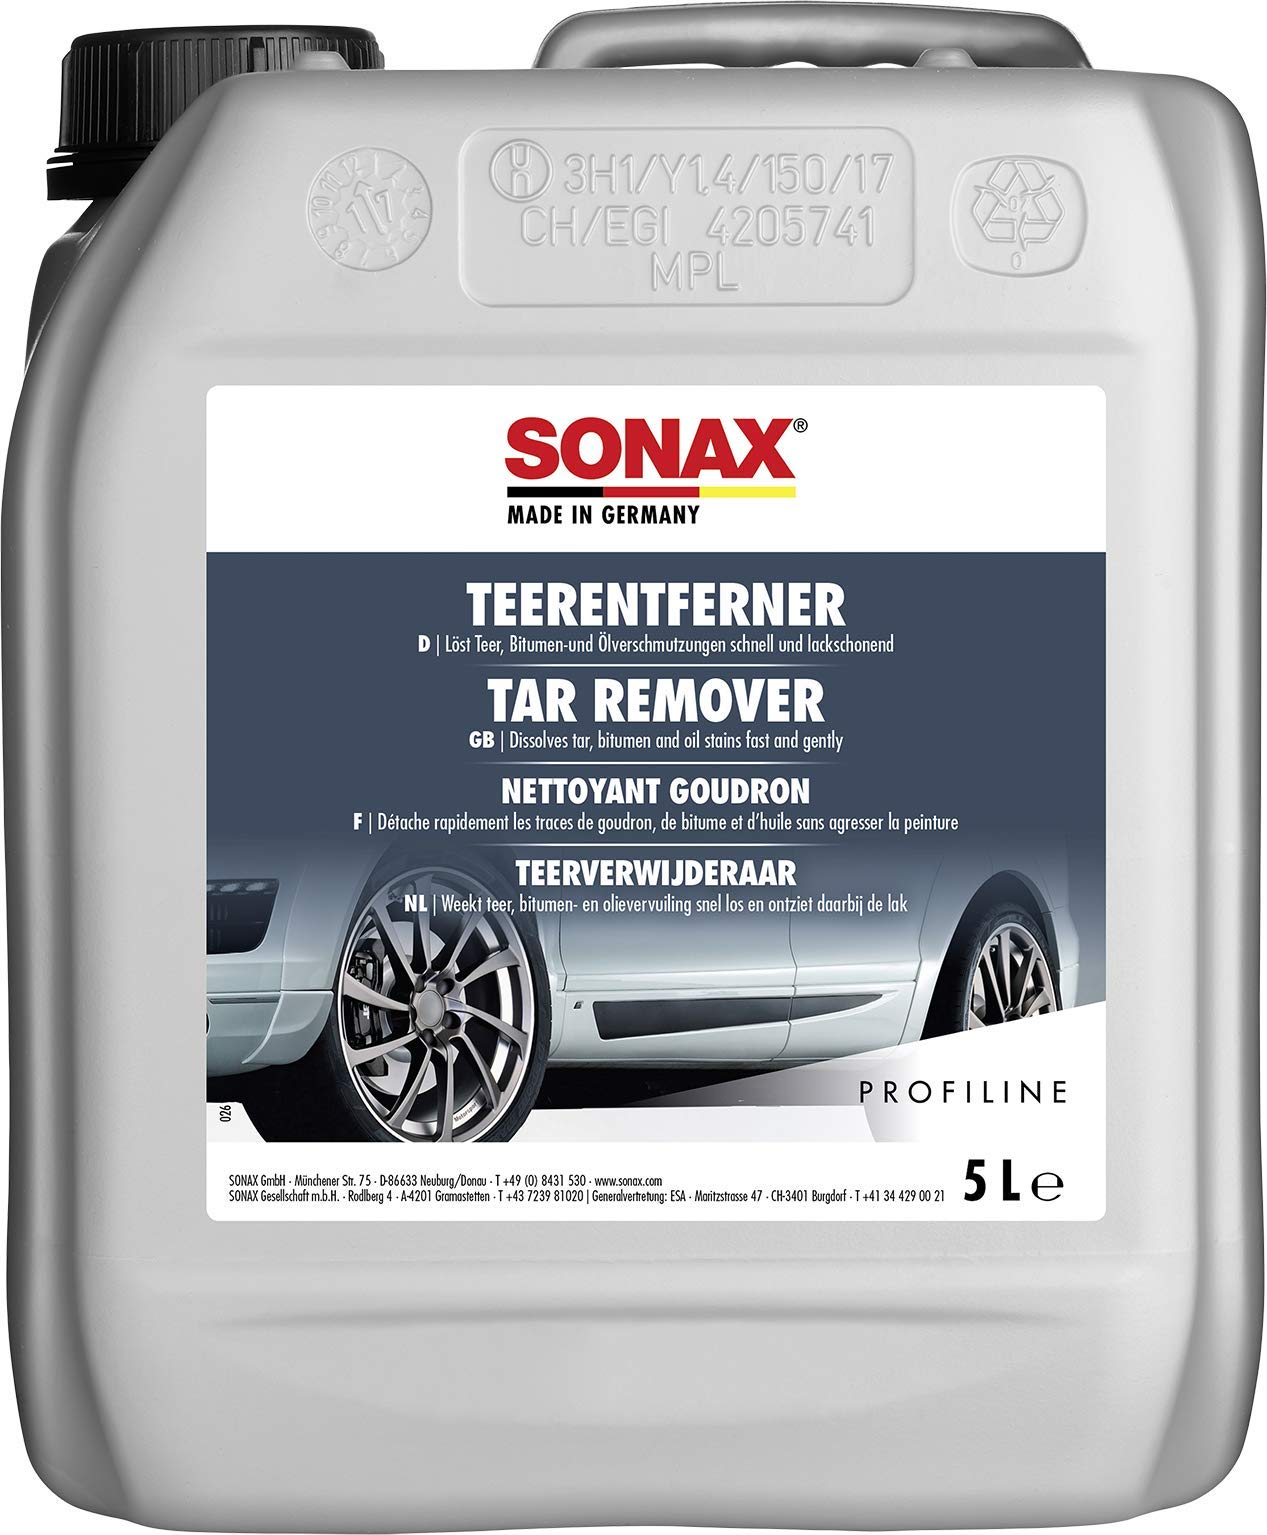 SONAX PROFILINE TeerEntferner (5 Liter) löst schonend und gründlich hartnäckige Verschmutzungen wie Teer- und Ölflecken von Lack und Chrom | Art-Nr. 03045050 von SONAX